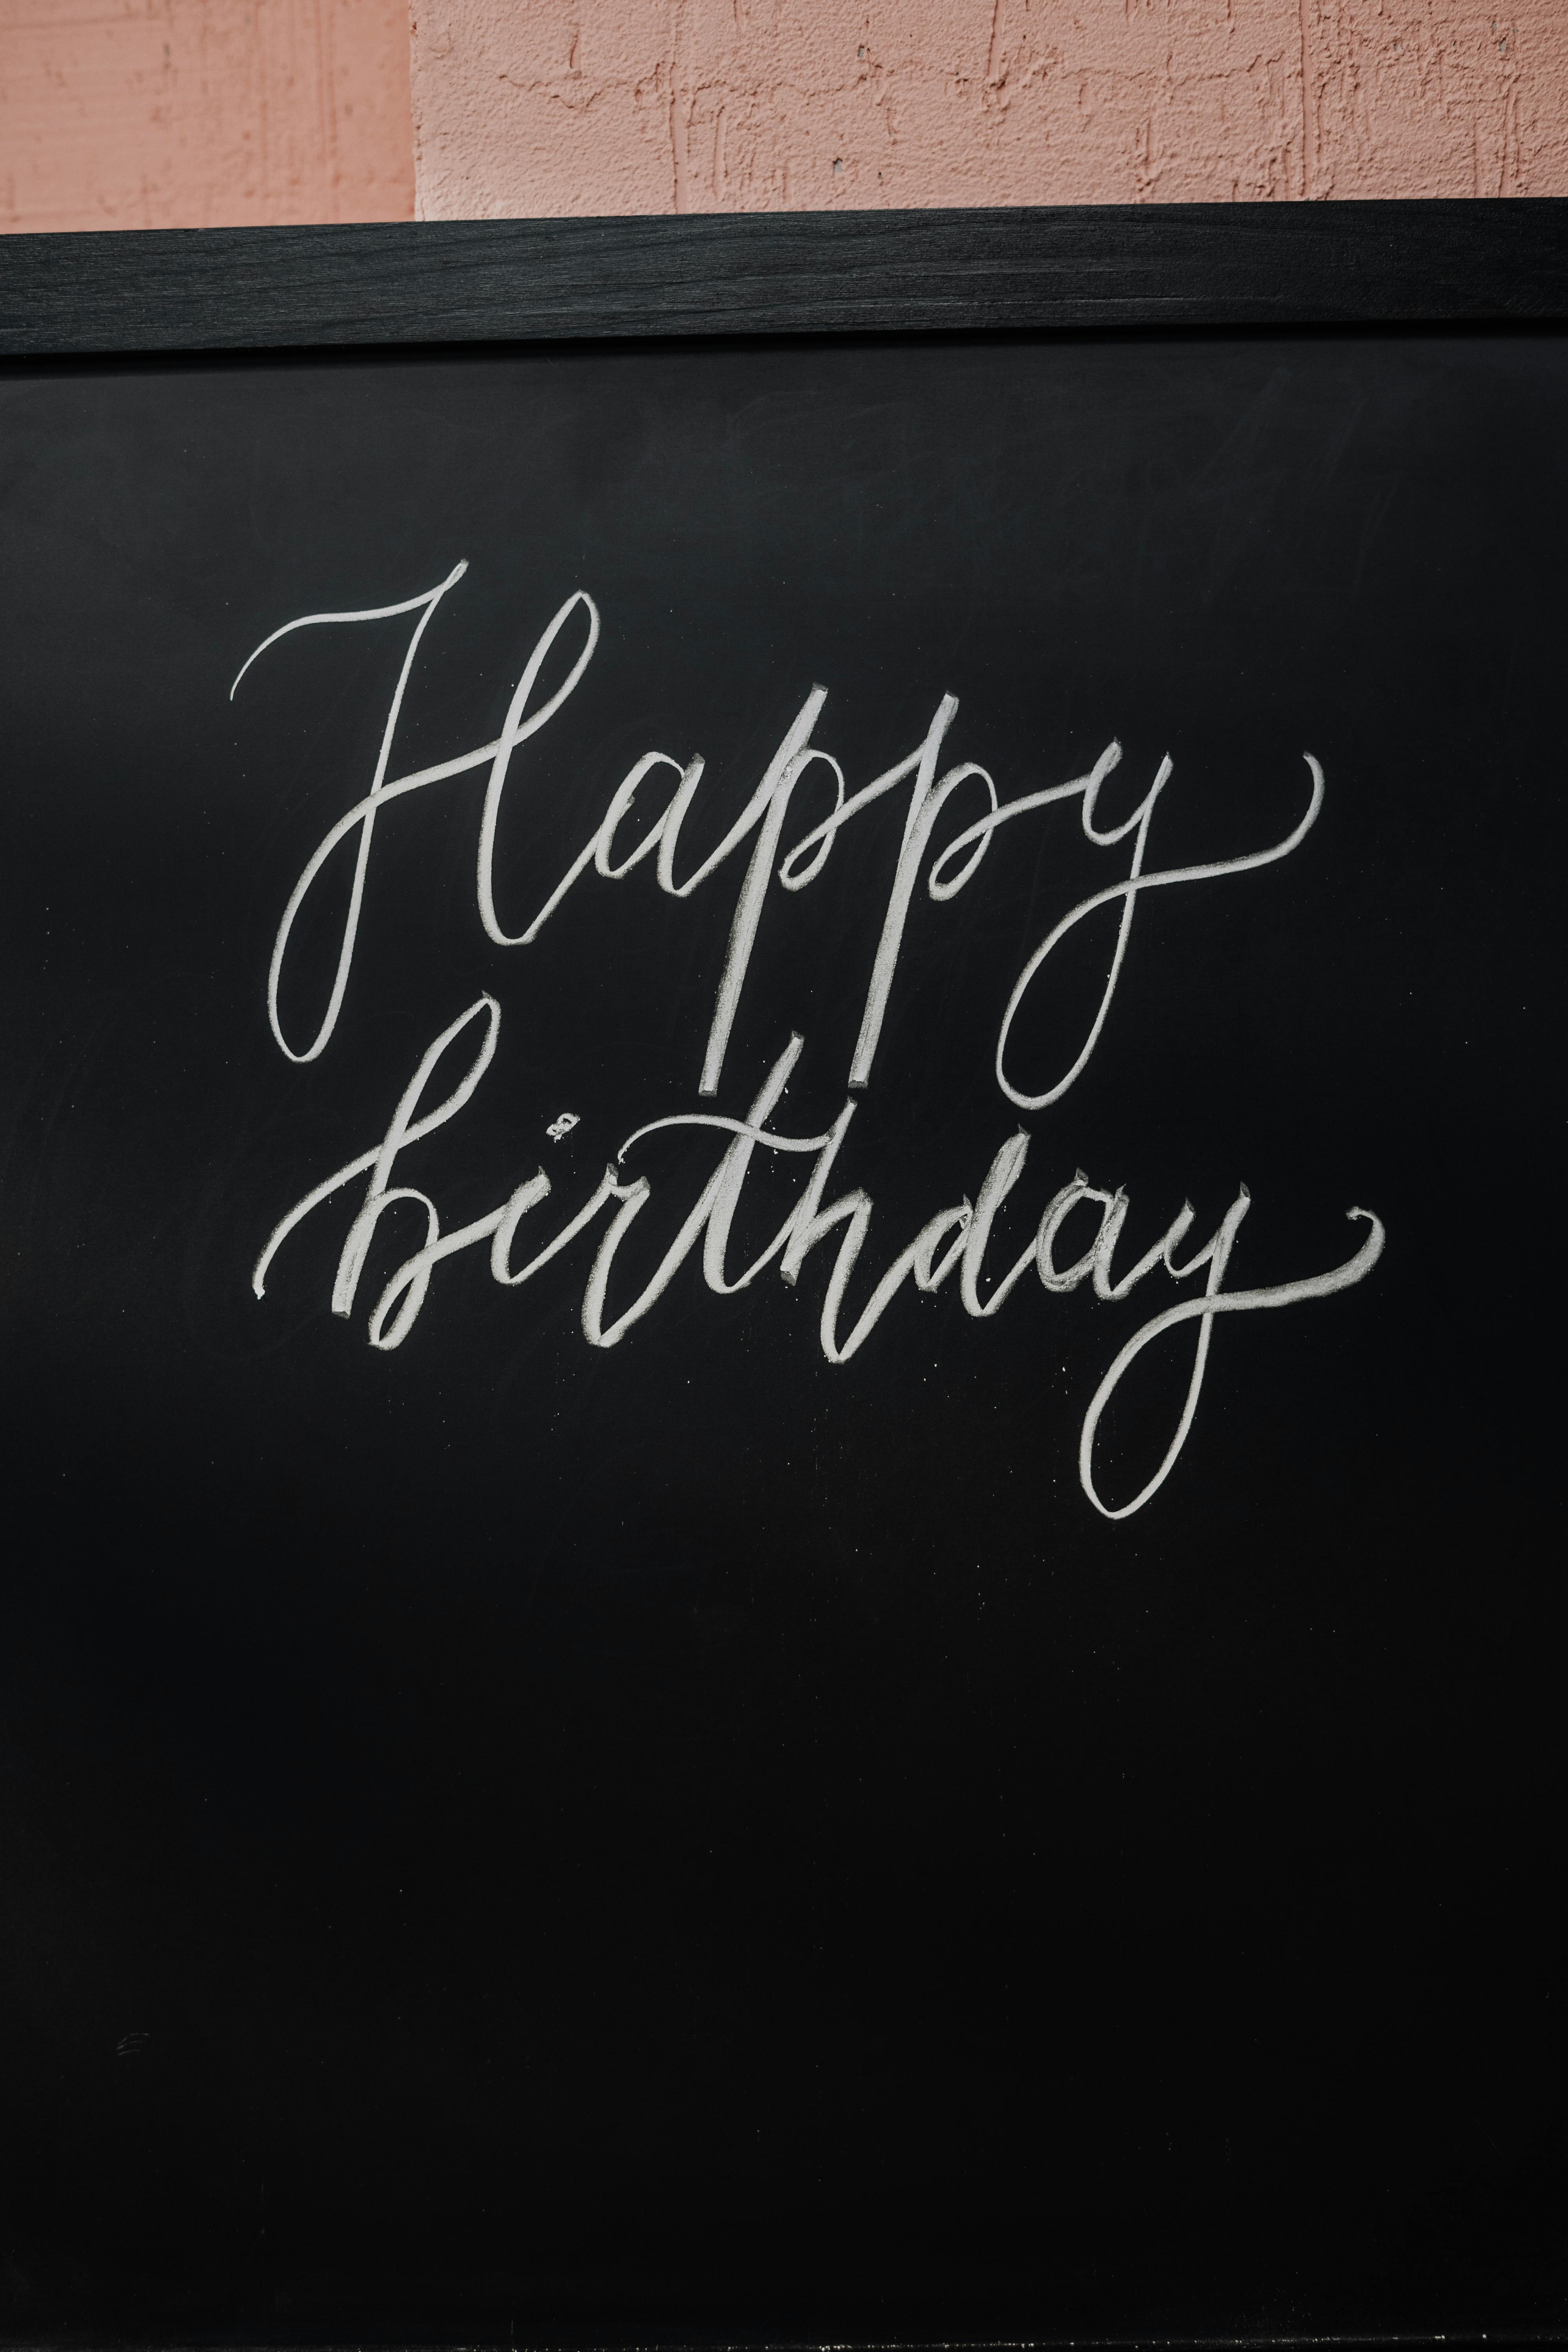 Download Party Happy Birthday Wallpaper RoyaltyFree Vector Graphic   Pixabay